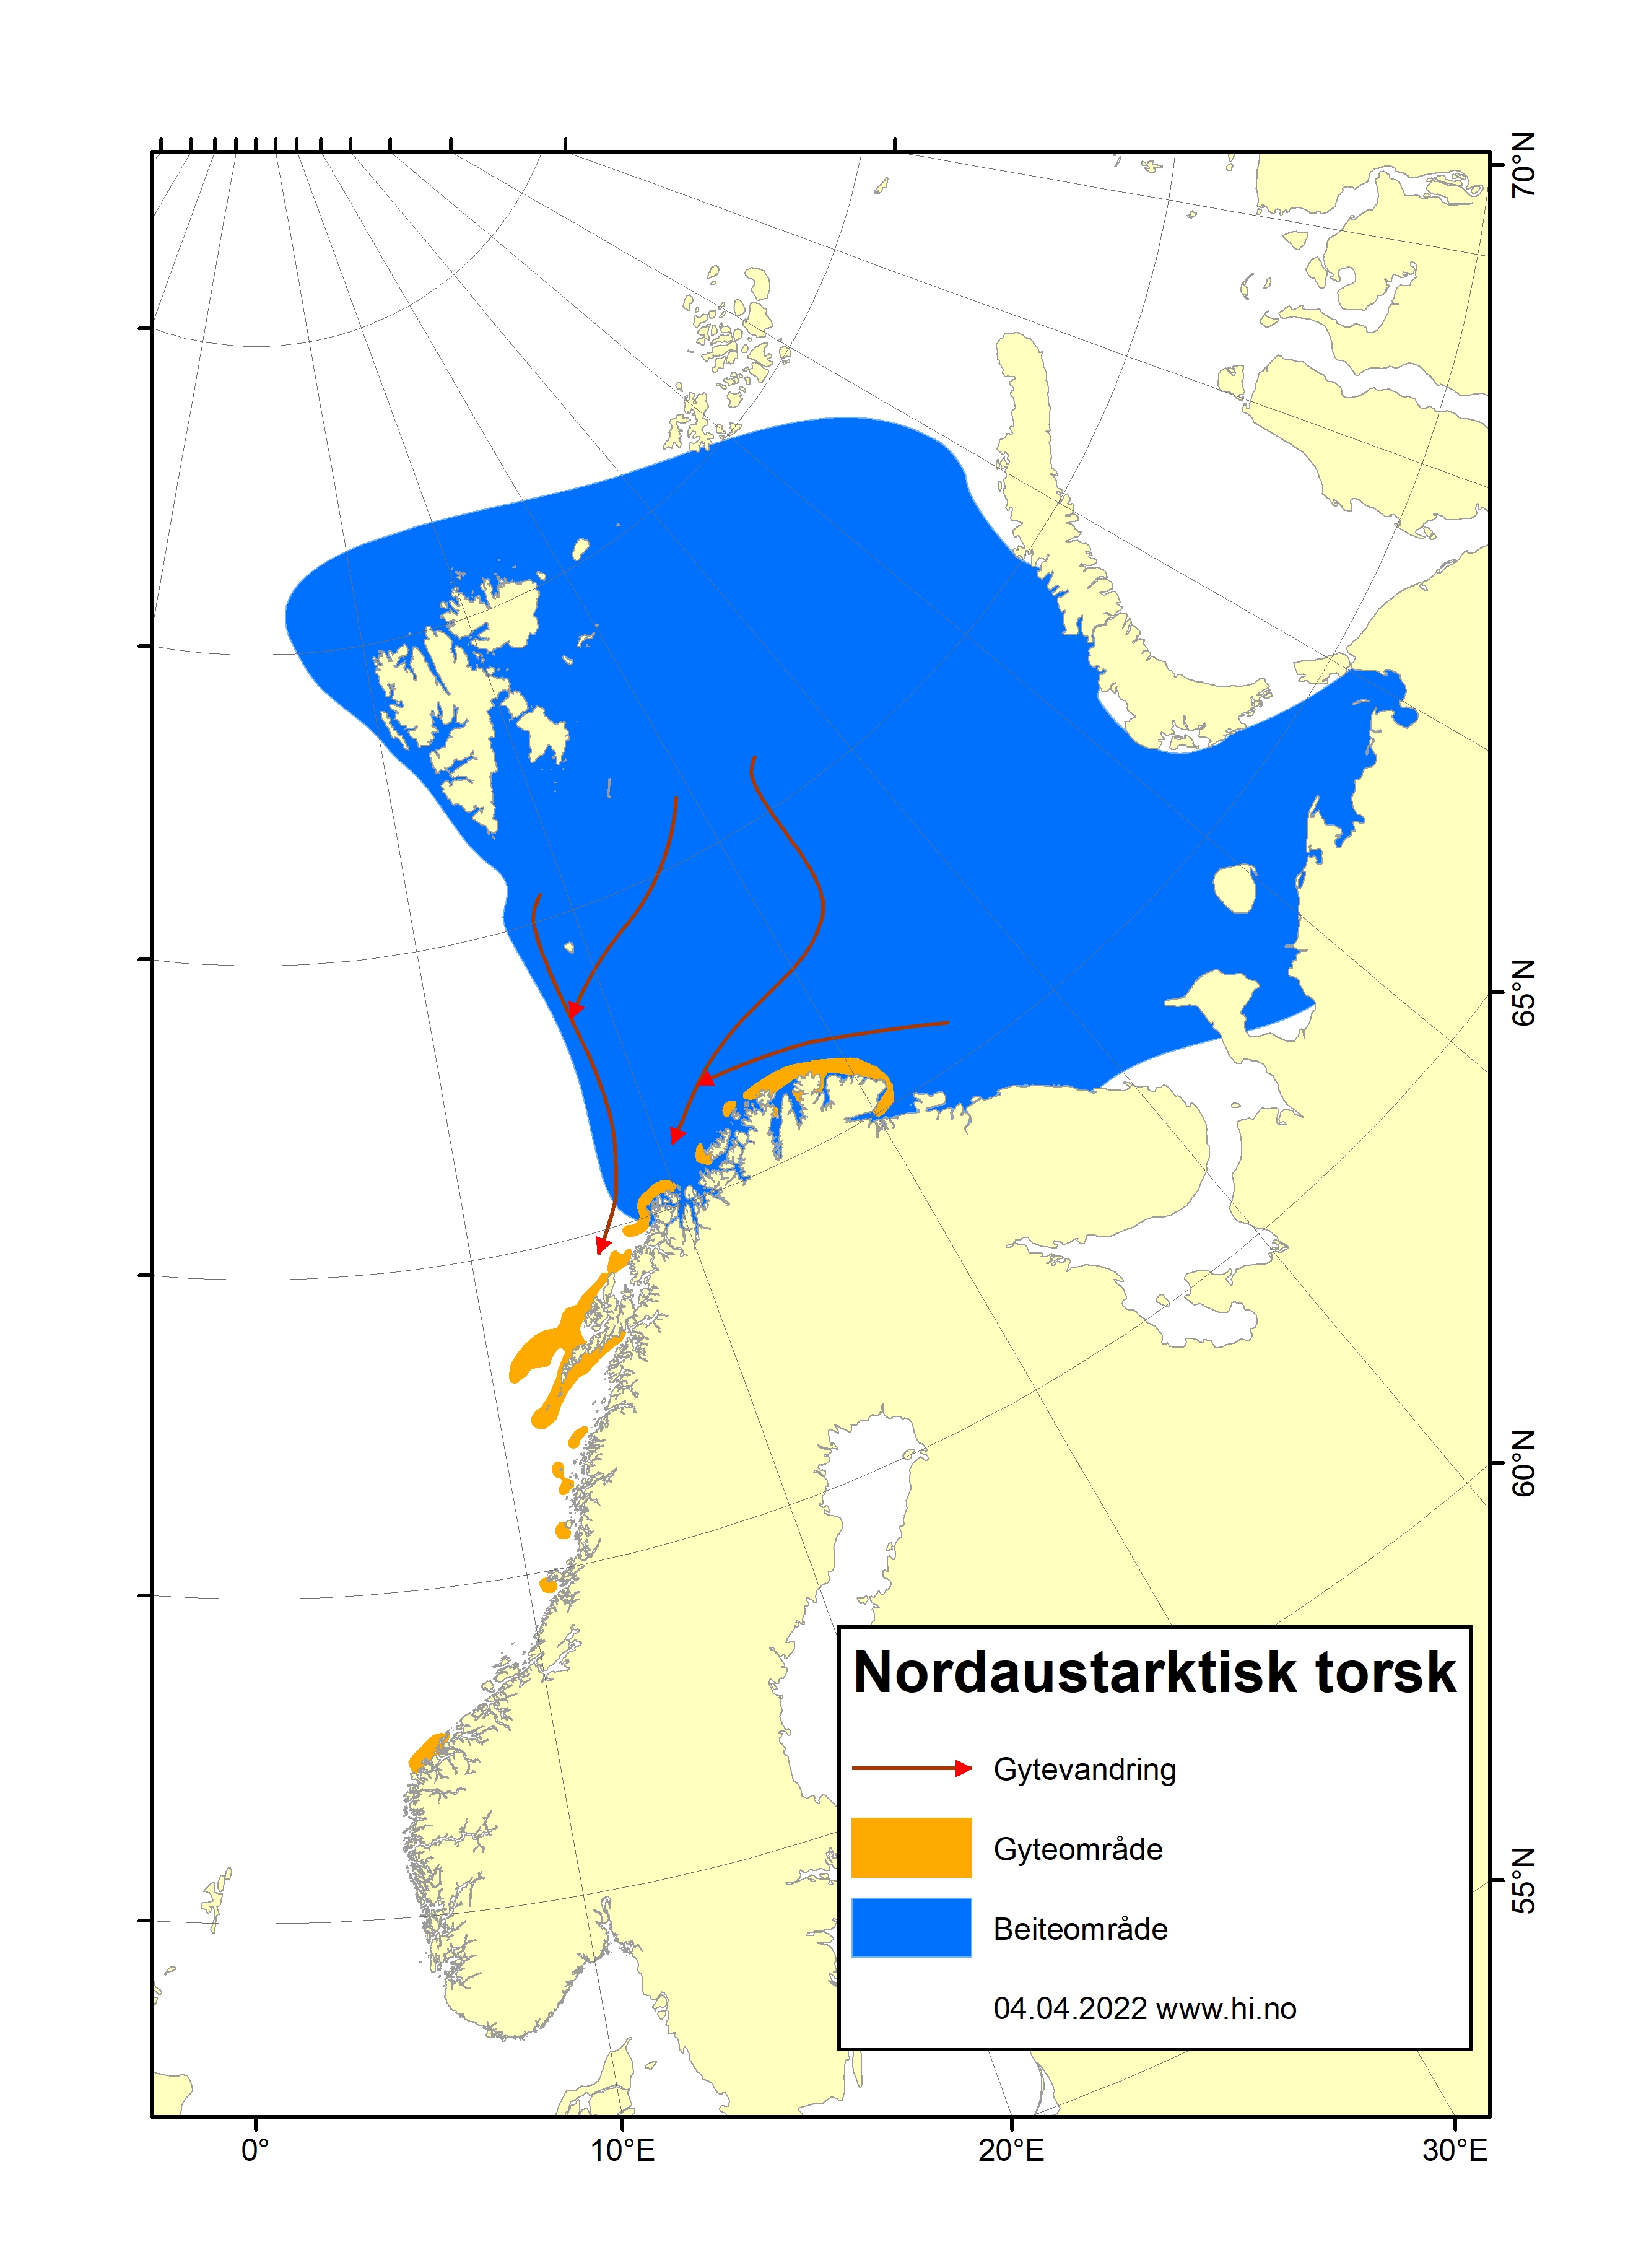 Kart over Norge med store blå felt i nord som markerer beiteområde, og oransje områder konsentrert rundt Lofoten som viser gyteområder